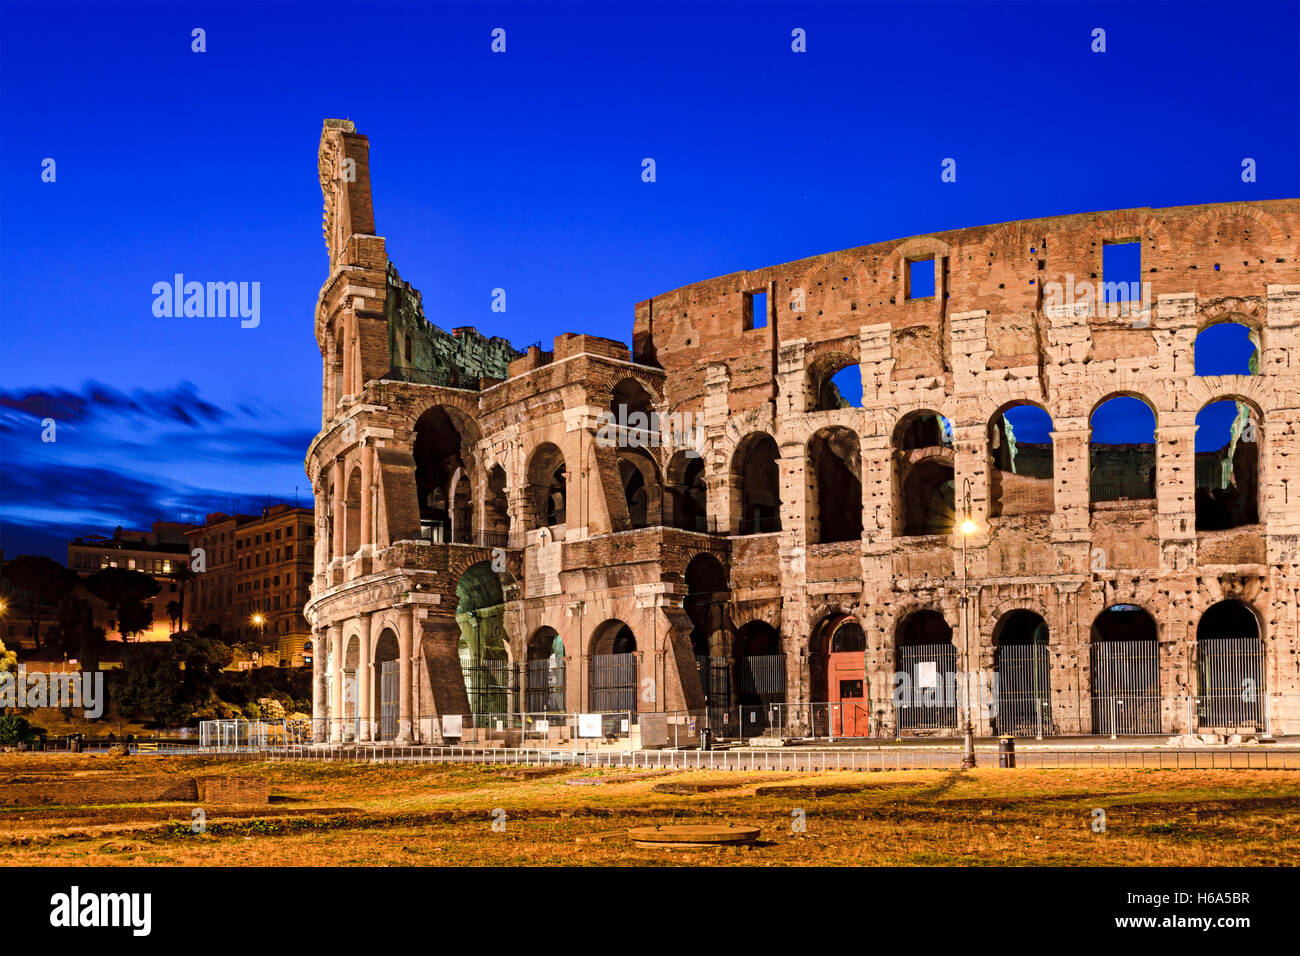 Rovine del Colosseo anfiteatro al capitale d'Italia Roma. Alba illumina le pareti e gli archi di antica pietra miliare romano. Foto Stock